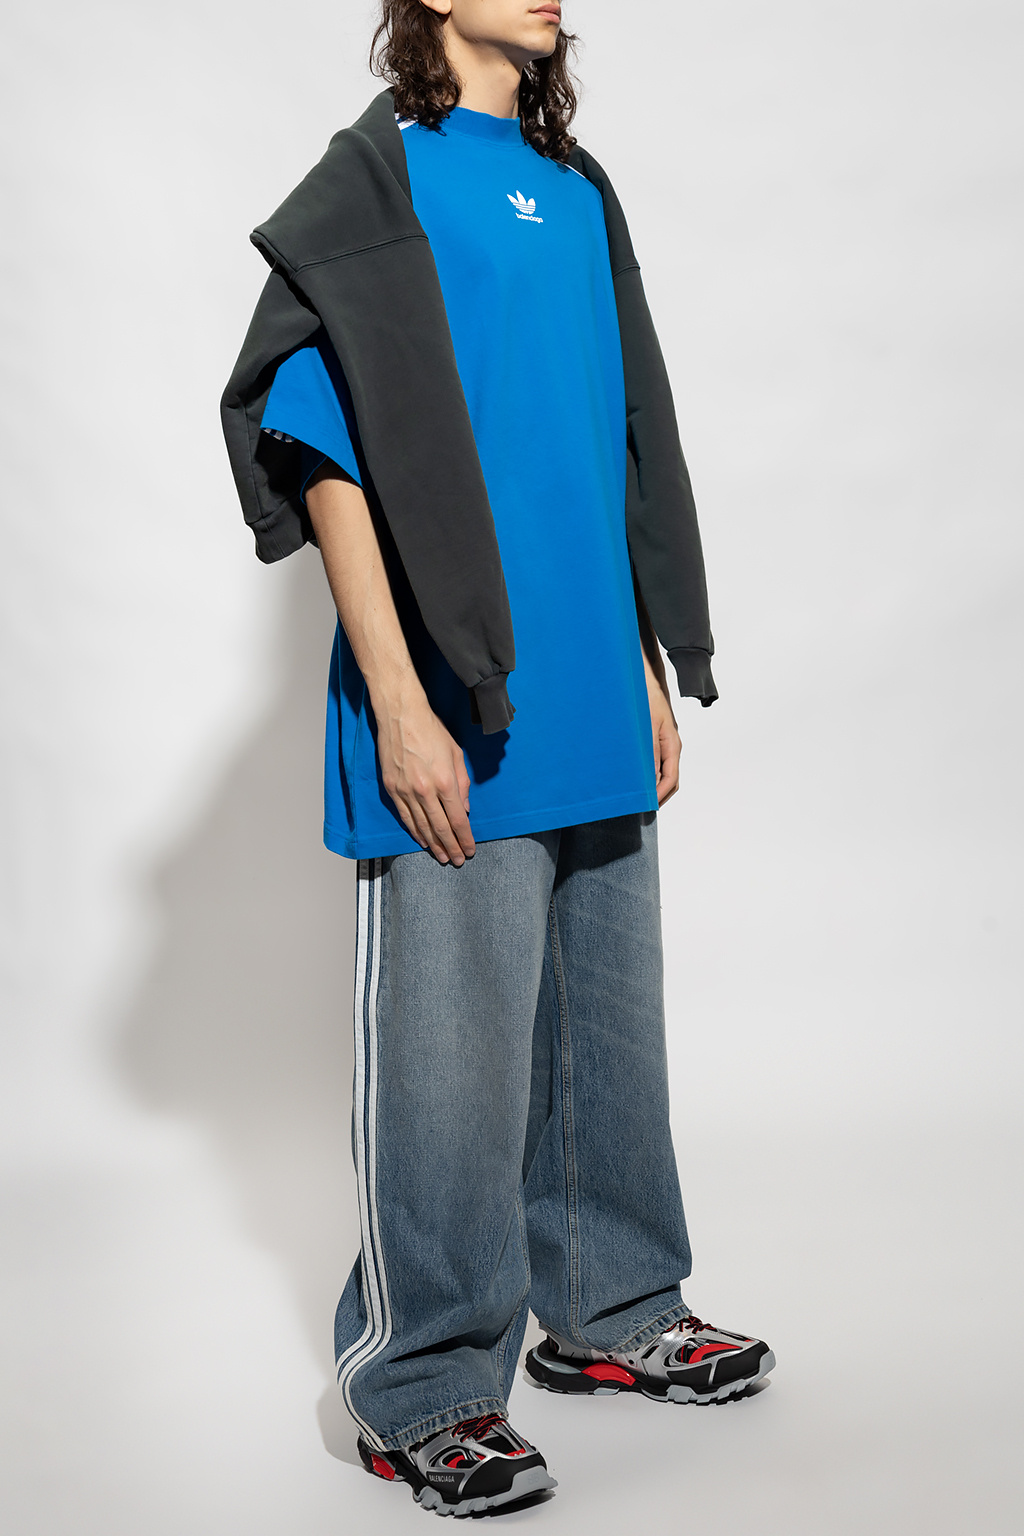 Adidas oversize t-shirt - Balenciaga - Men